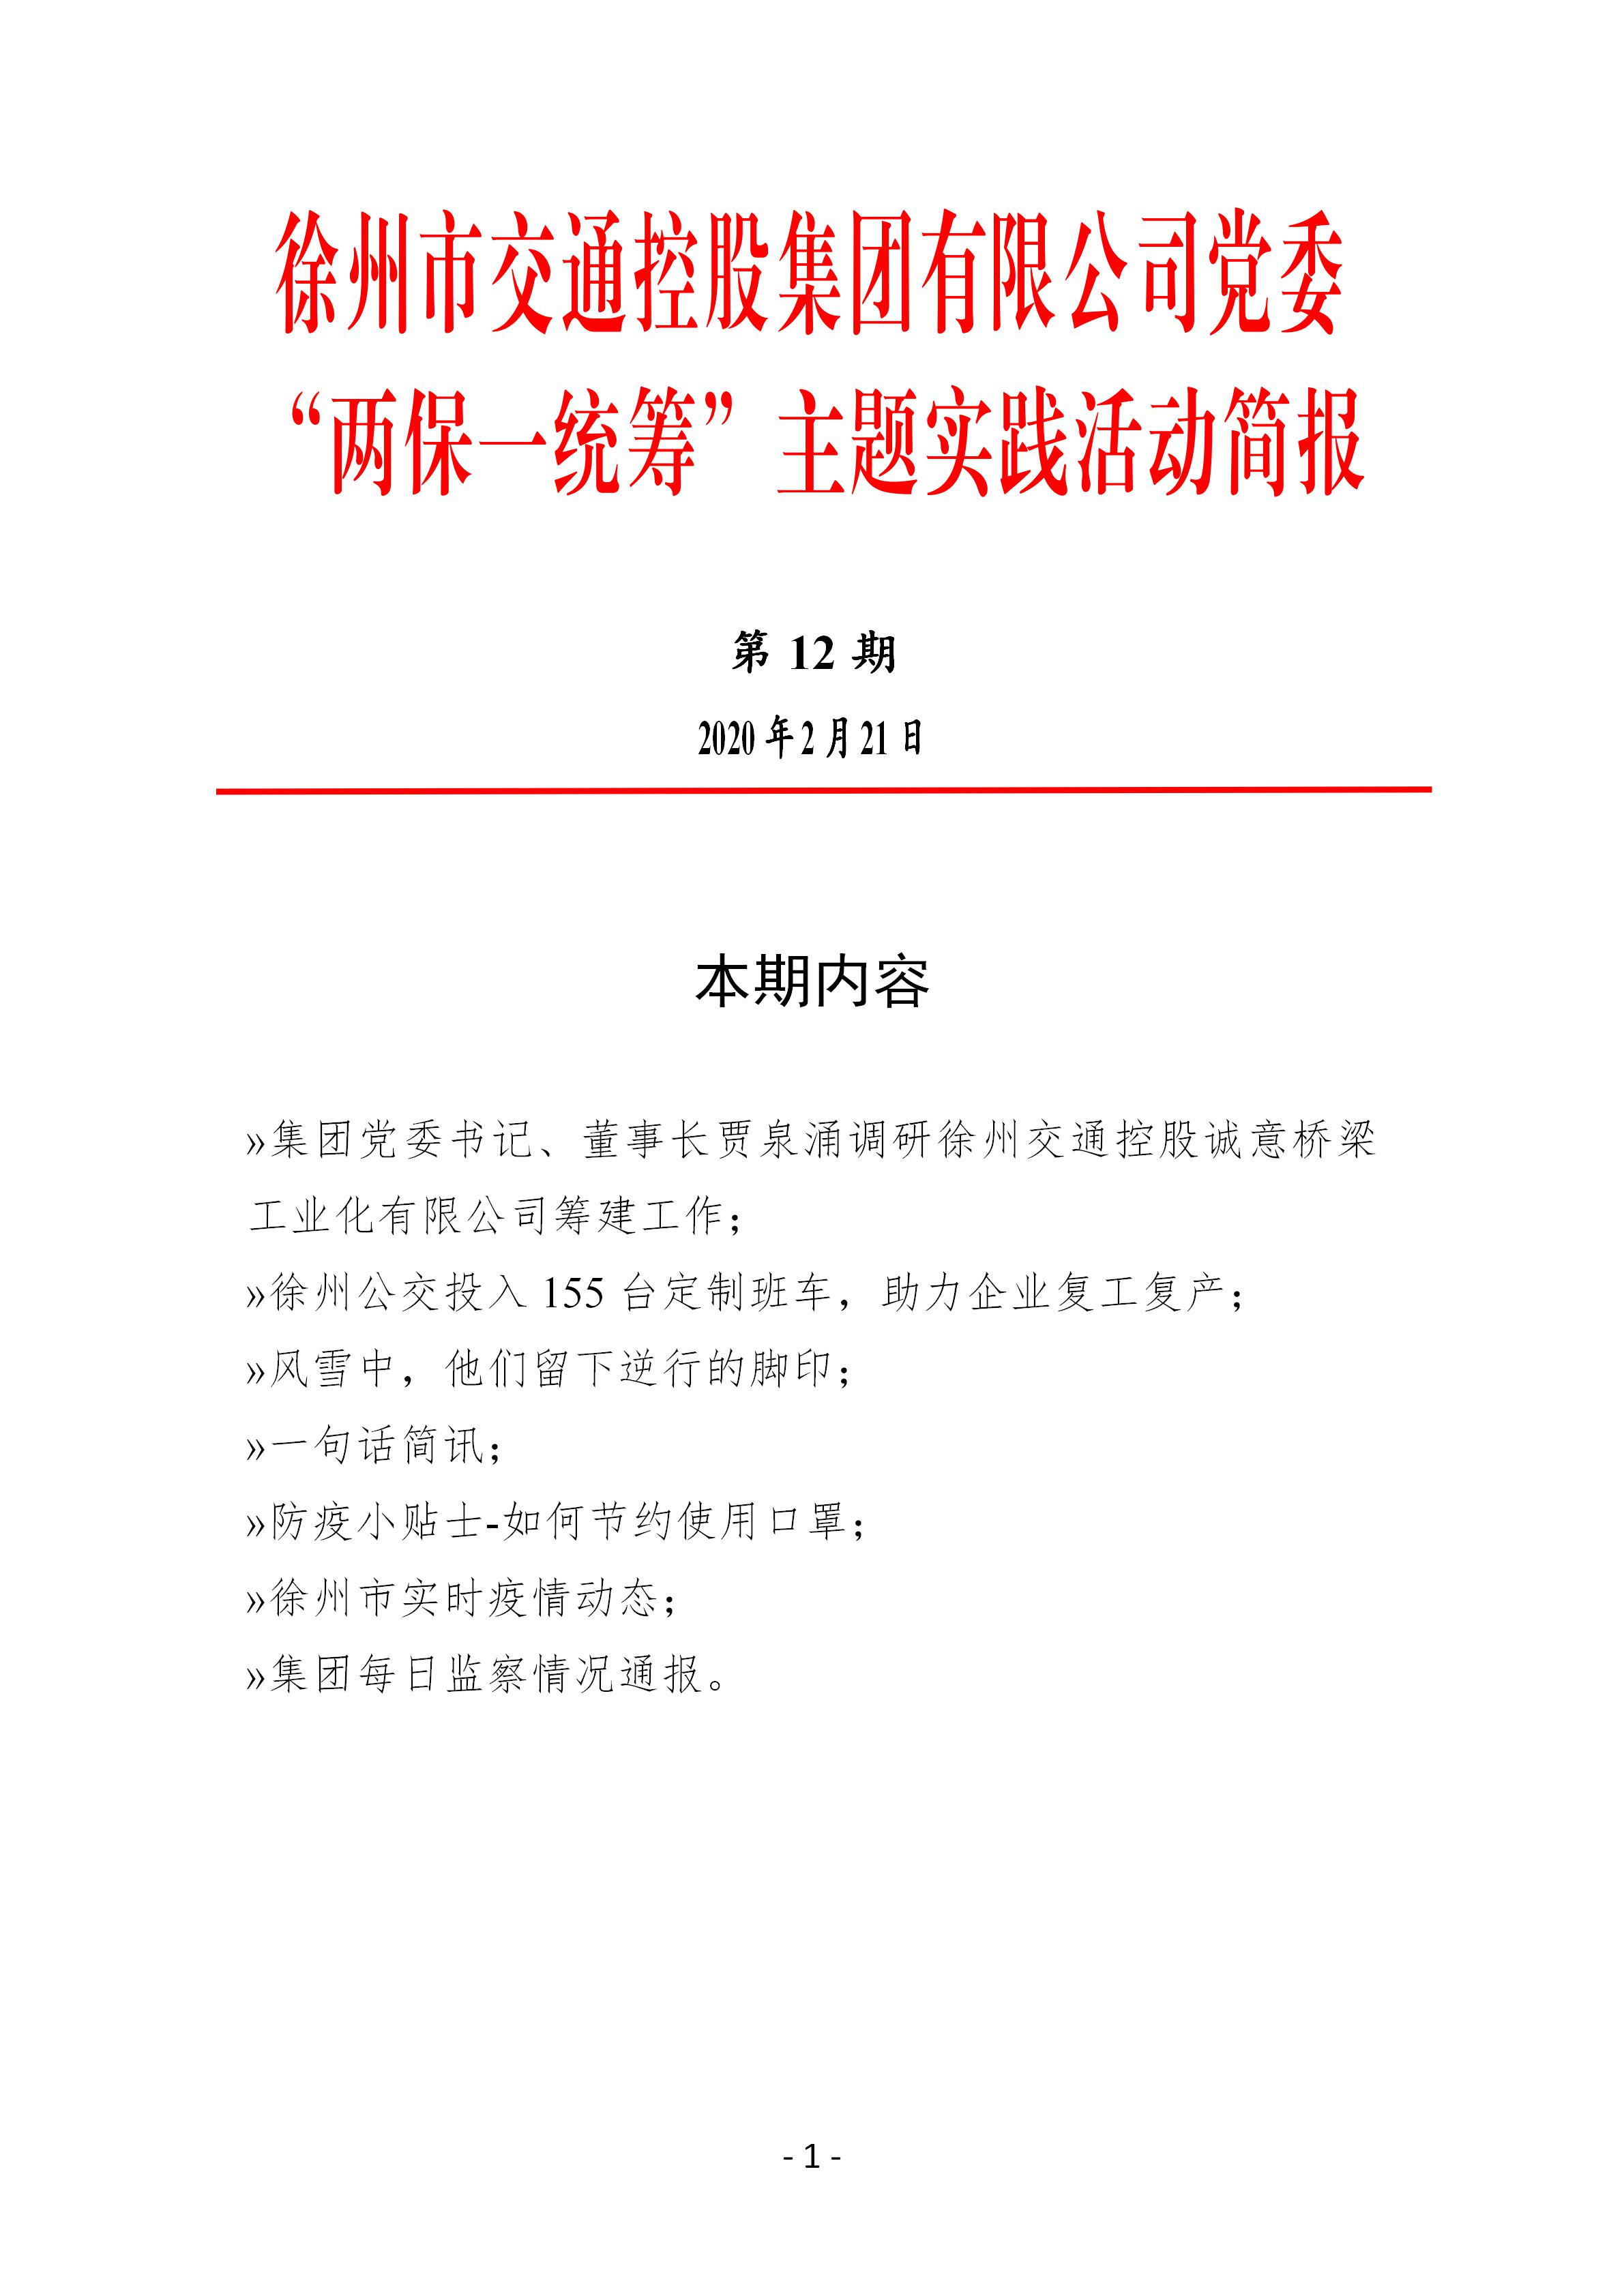 （第十二期2.21）徐州市交通控股集团党委“两保一统筹”主题实践活动简报